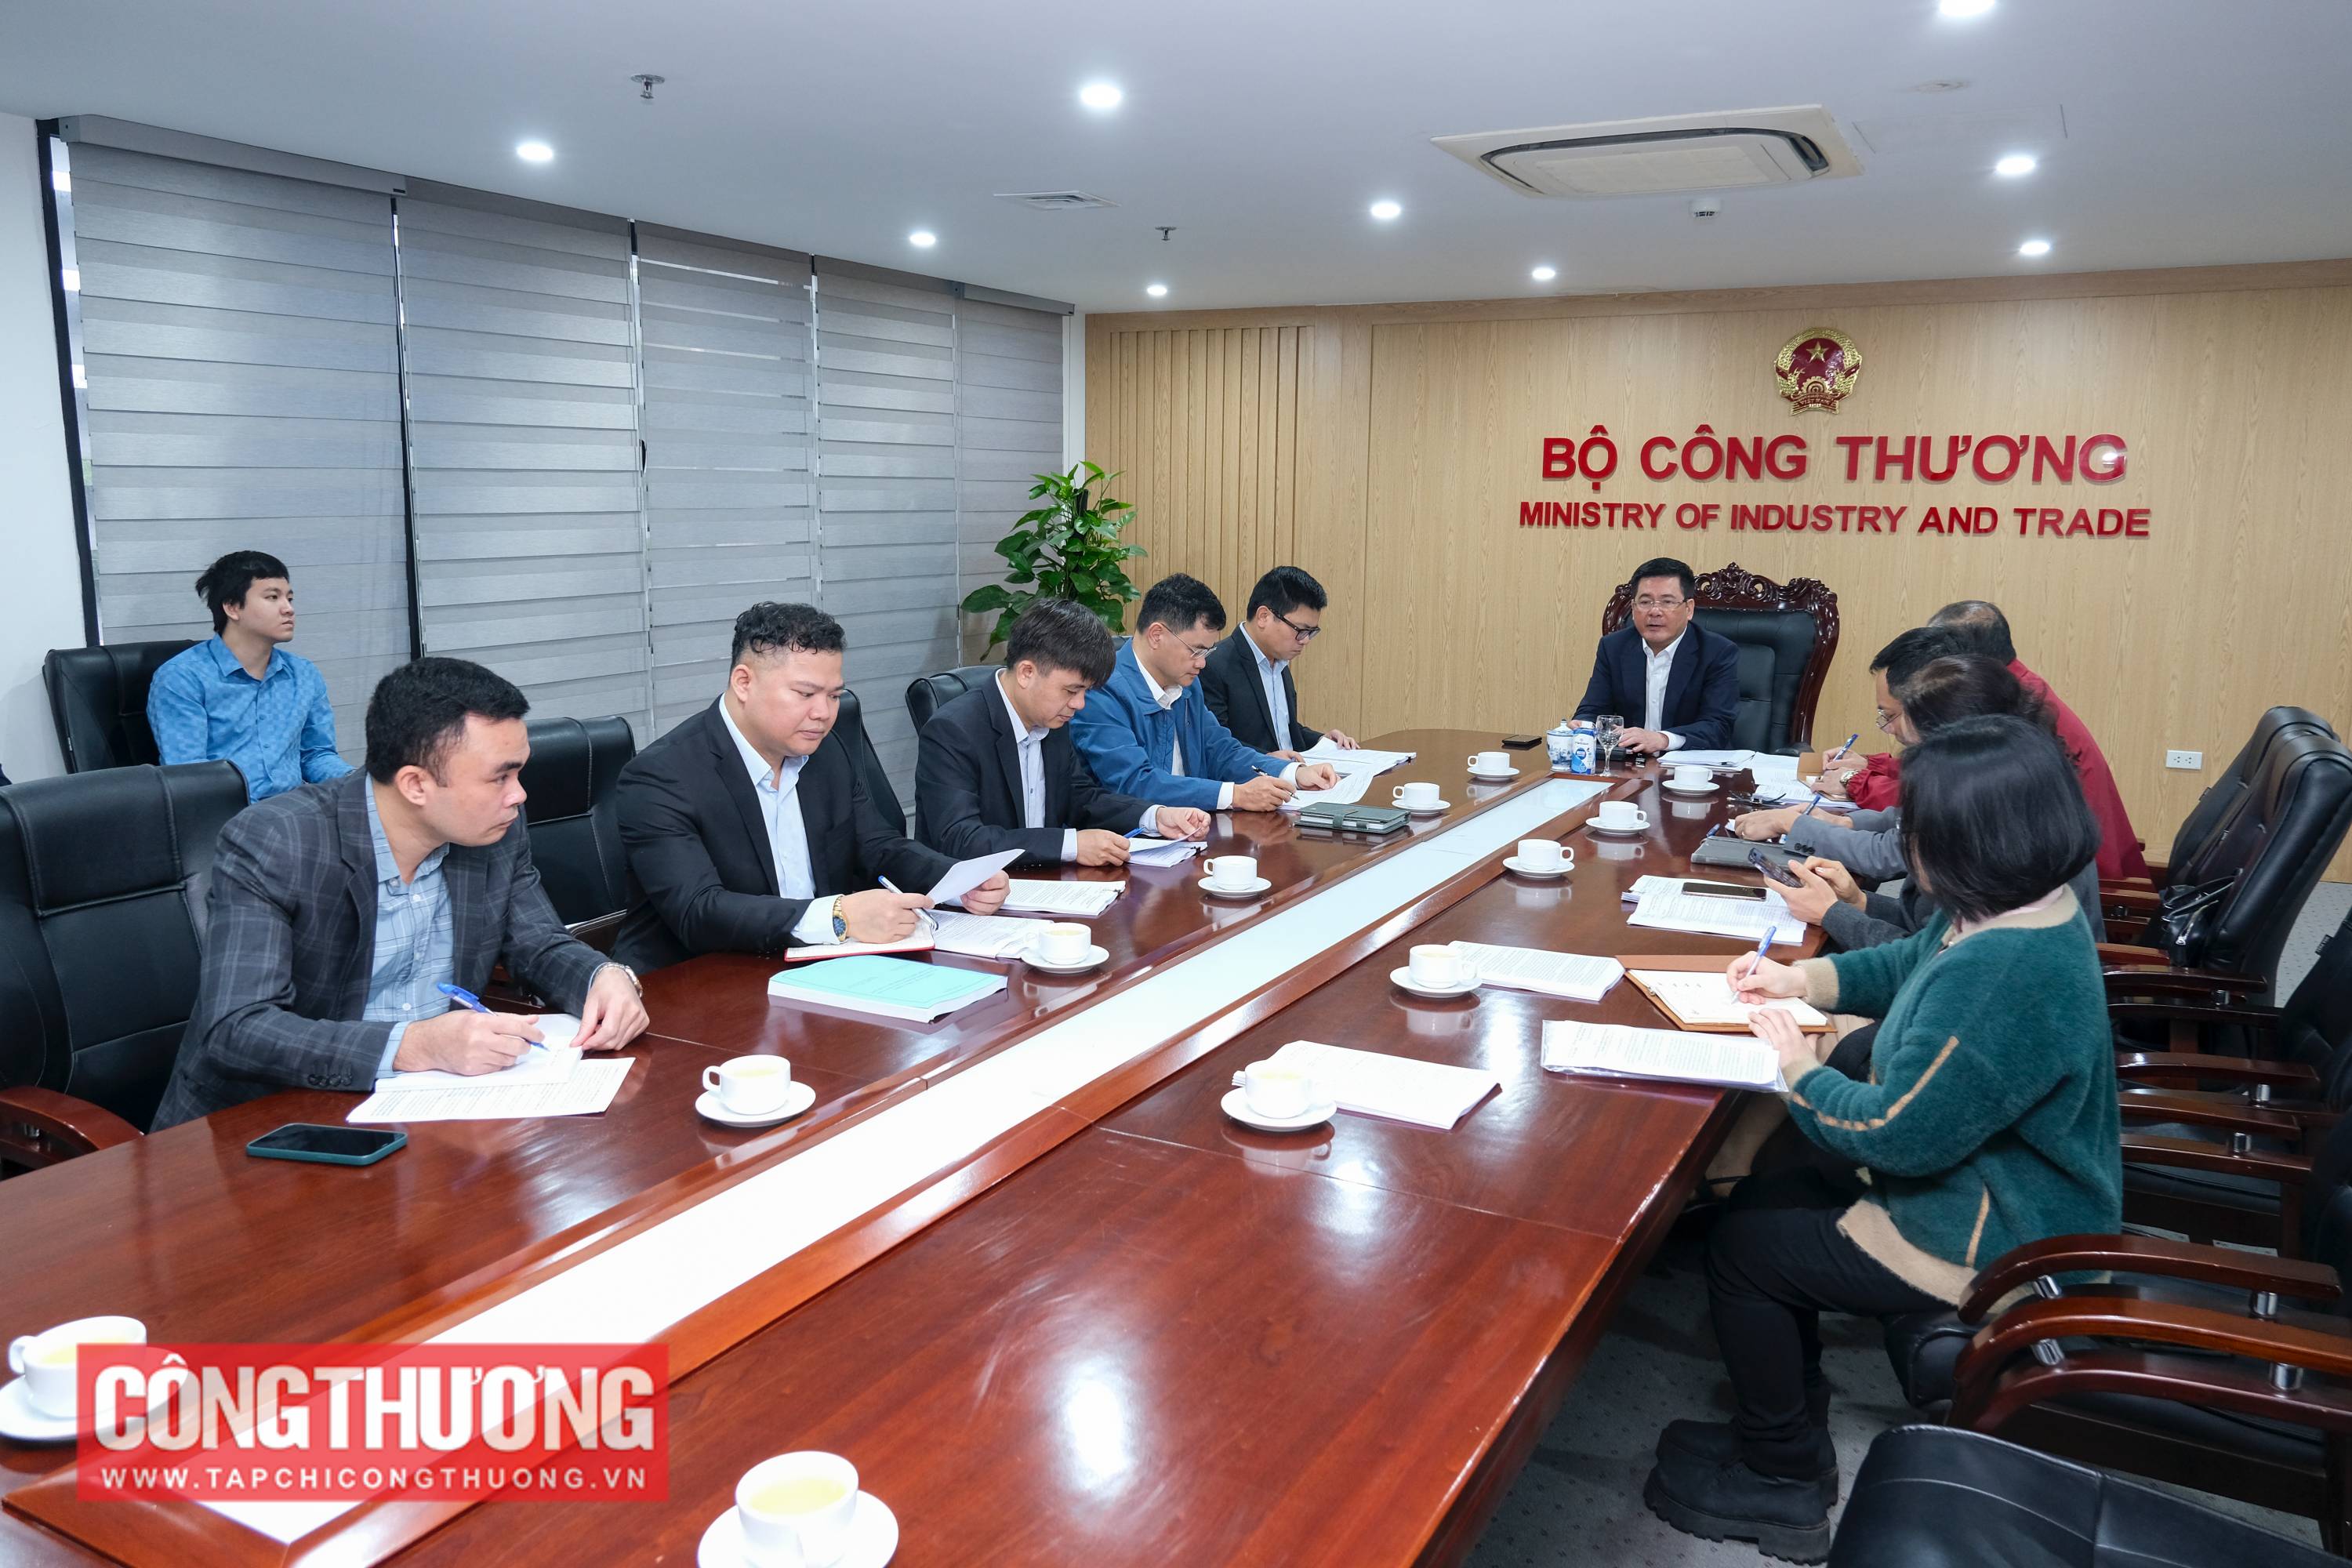 Bộ trưởng Nguyễn Hồng Diên đã tổ chức buổi làm việc với các đơn vị thuộc Bộ về việc xây dựng Luật Công nghiệp trọng điểm và chiến lược phát triển các ngành công nghiệp thuộc phạm vi quản lý nhà nước của Bộ Công Thương